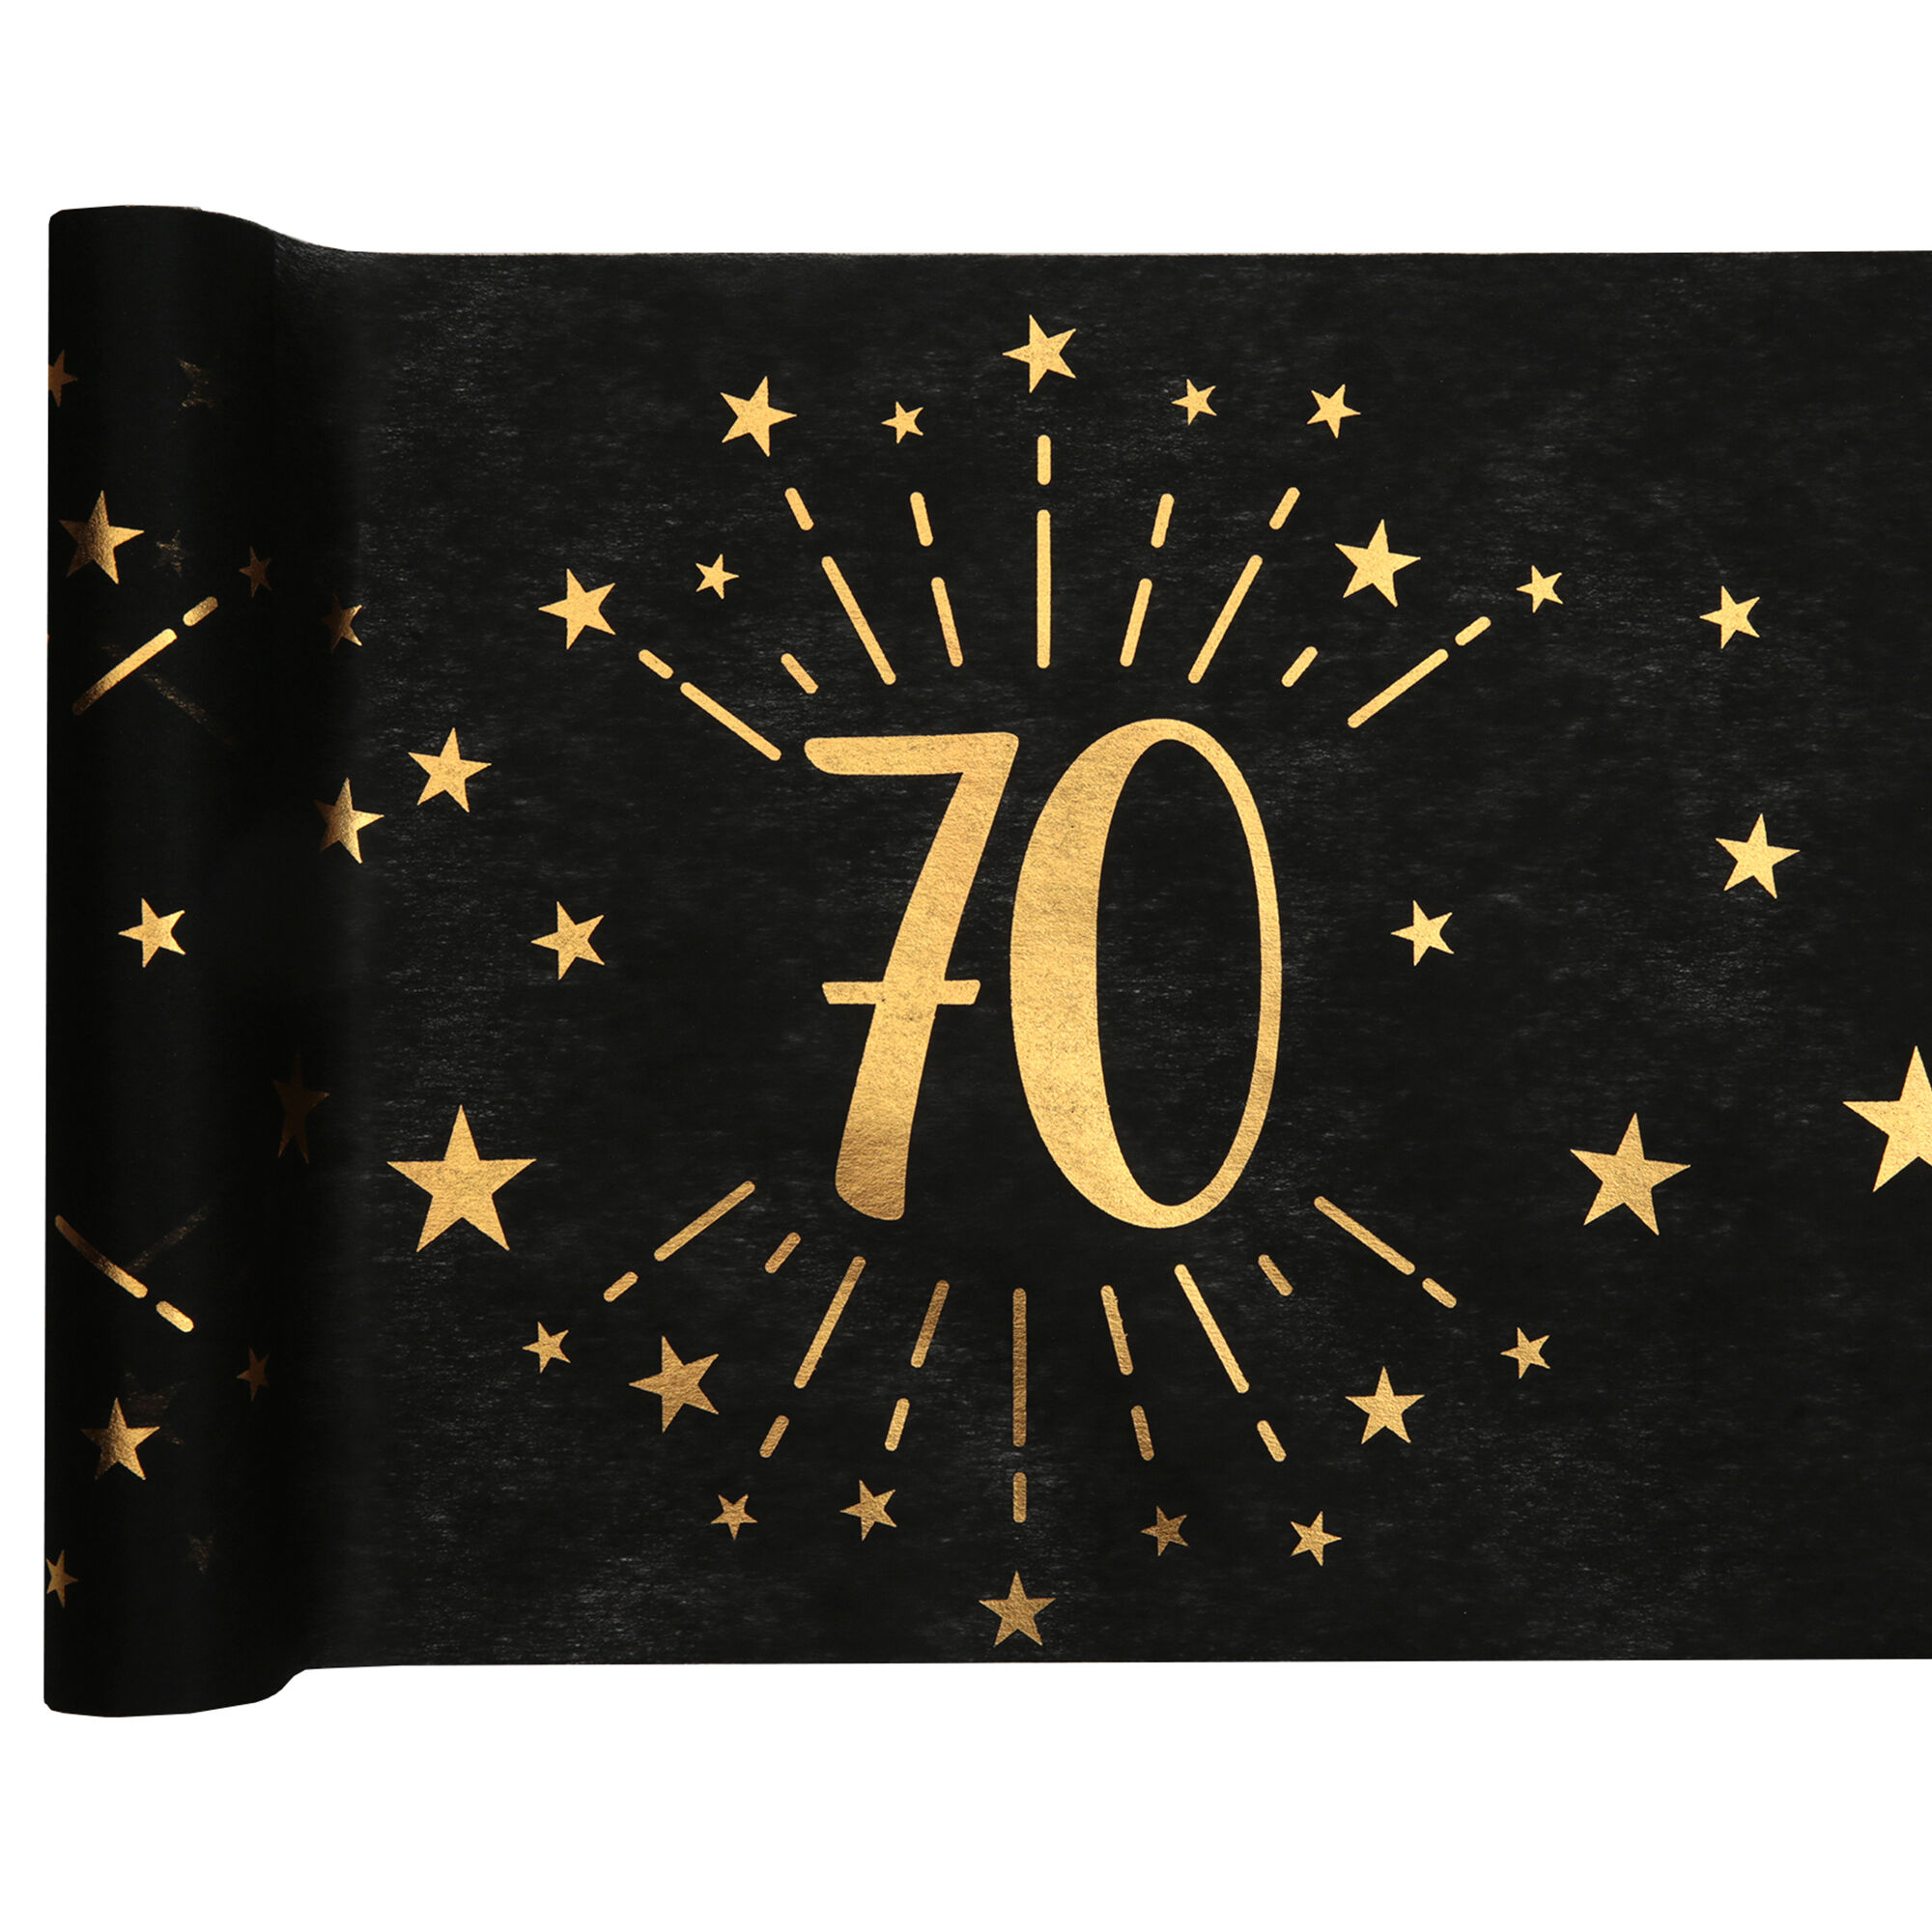 NEU Tischläufer Happy Birthday 70, schwarz-gold, 30cm x 5m